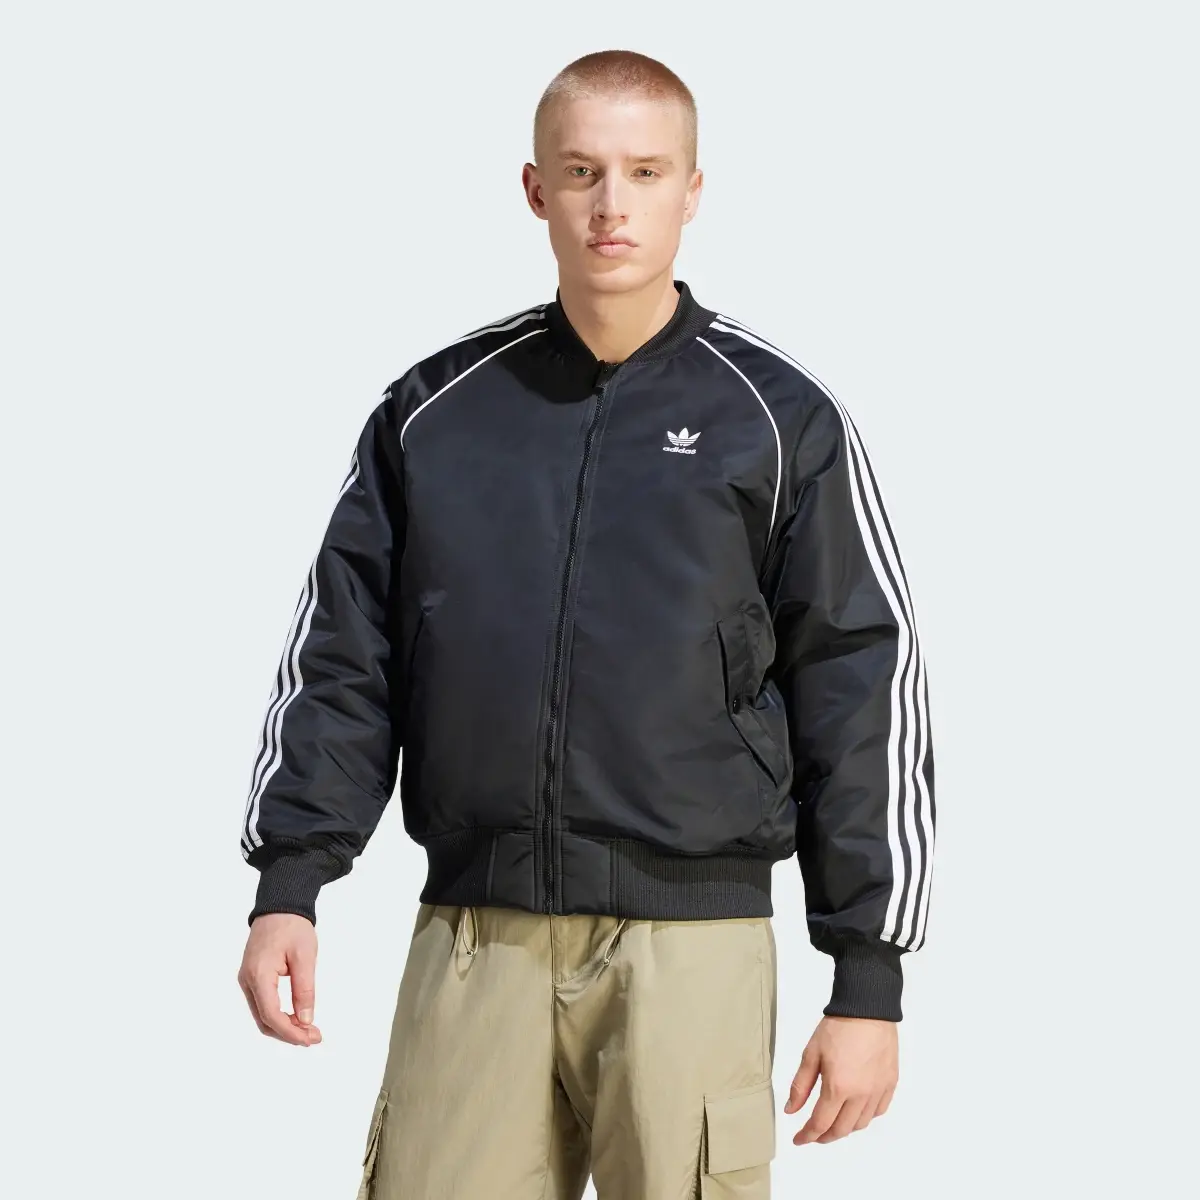 Adidas Premium Collegiate Jacket. 2